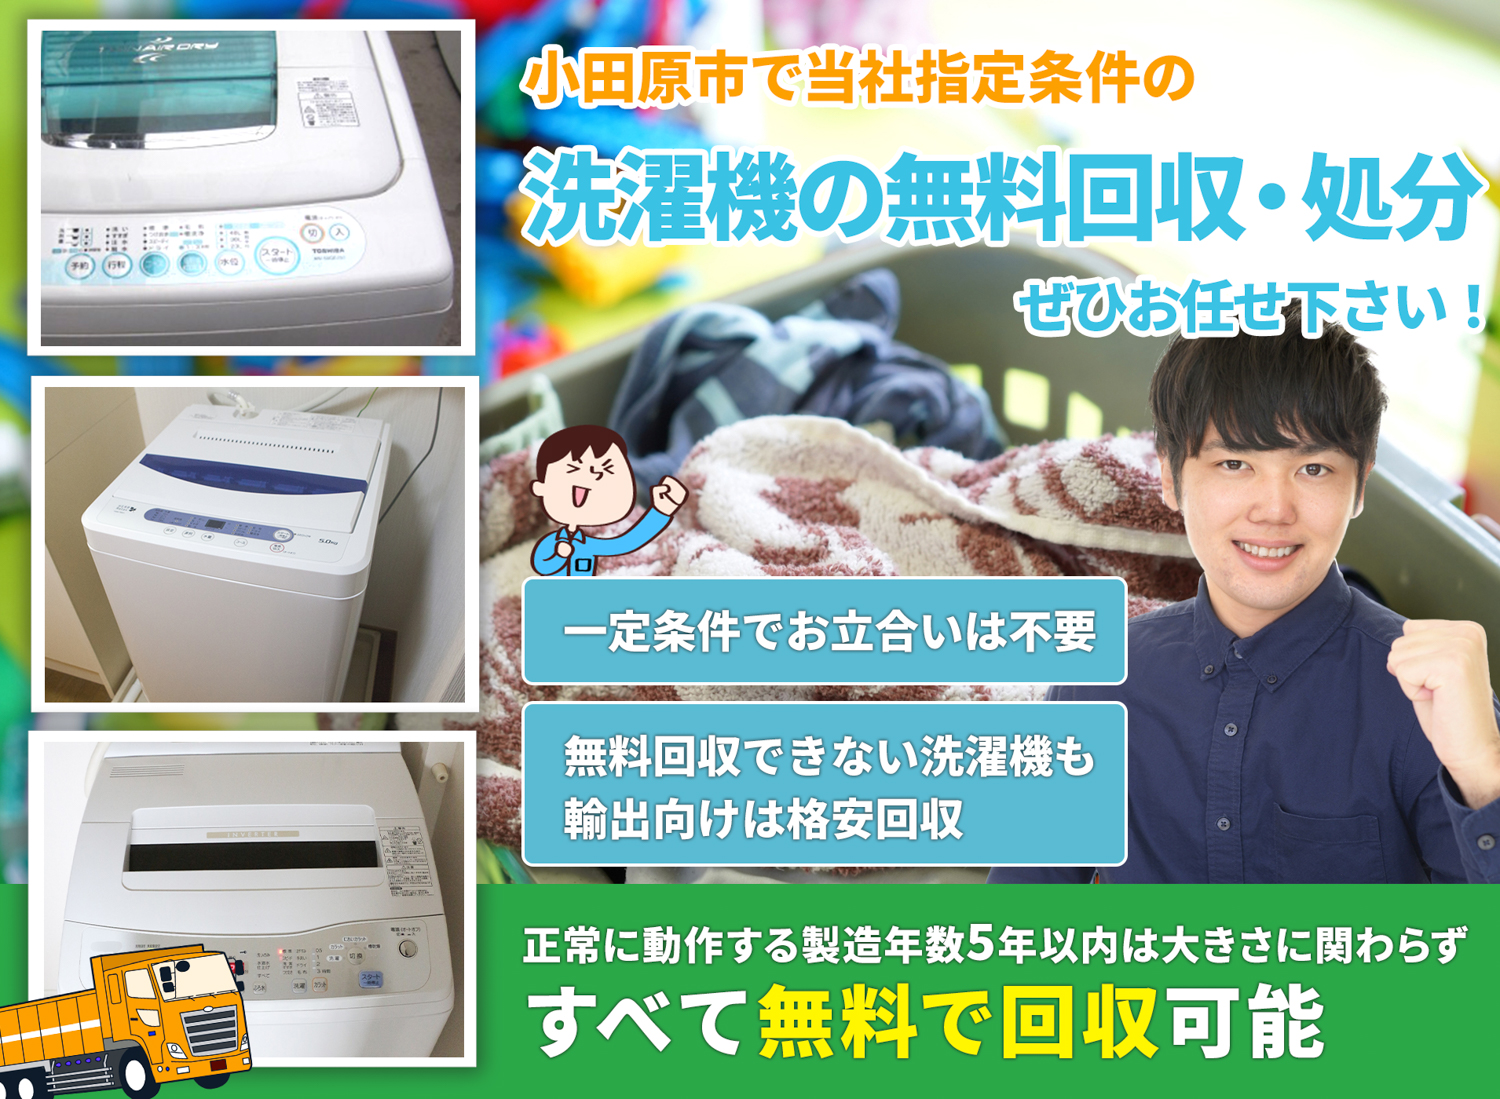 小田原市のサービスで地域一番を目指す洗濯機無料回収処分隊の洗濯機無料回収サービス